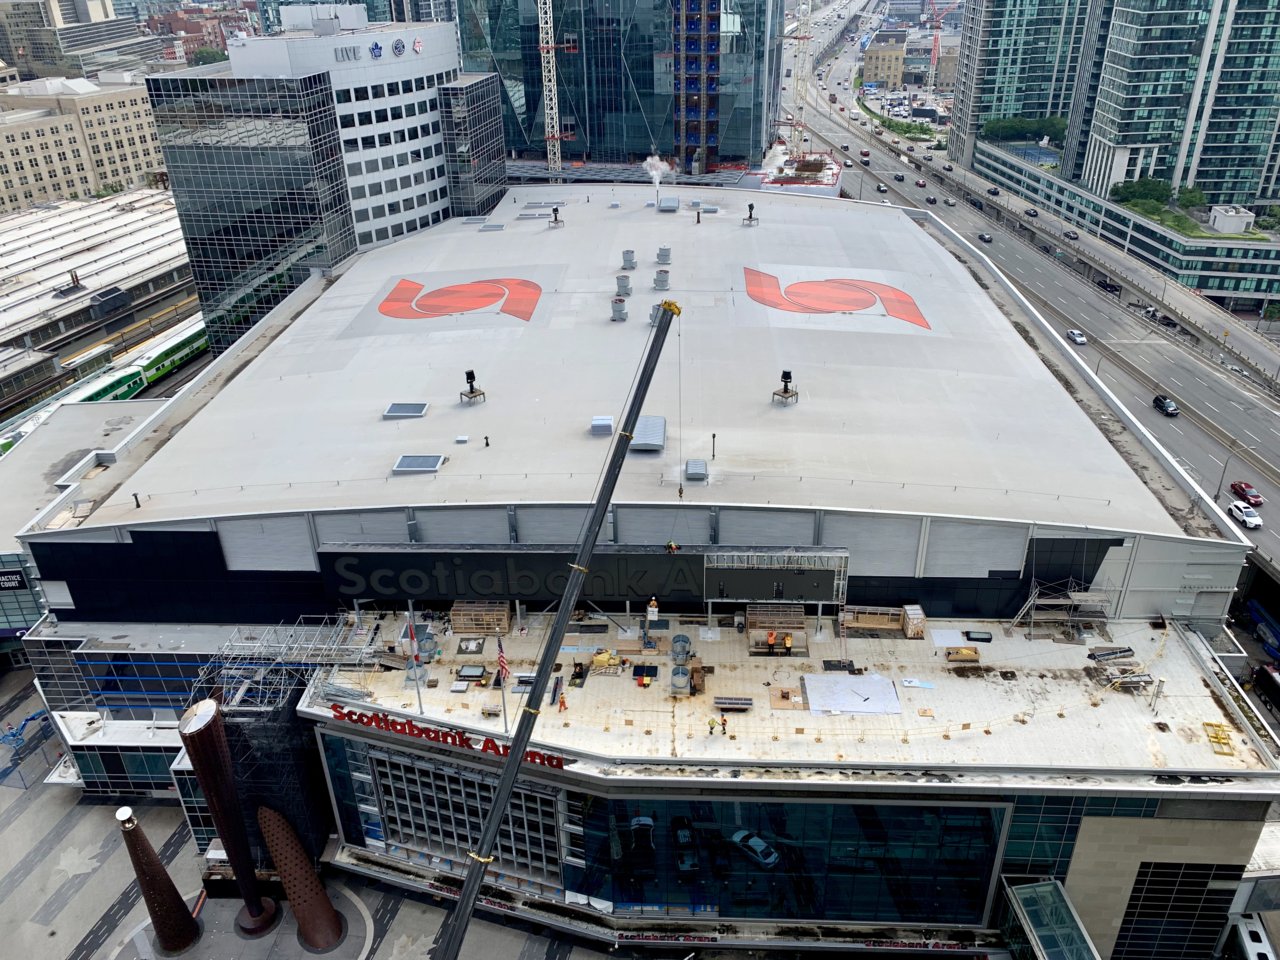 Scotiabank Arena (Previously Air Canada Centre)